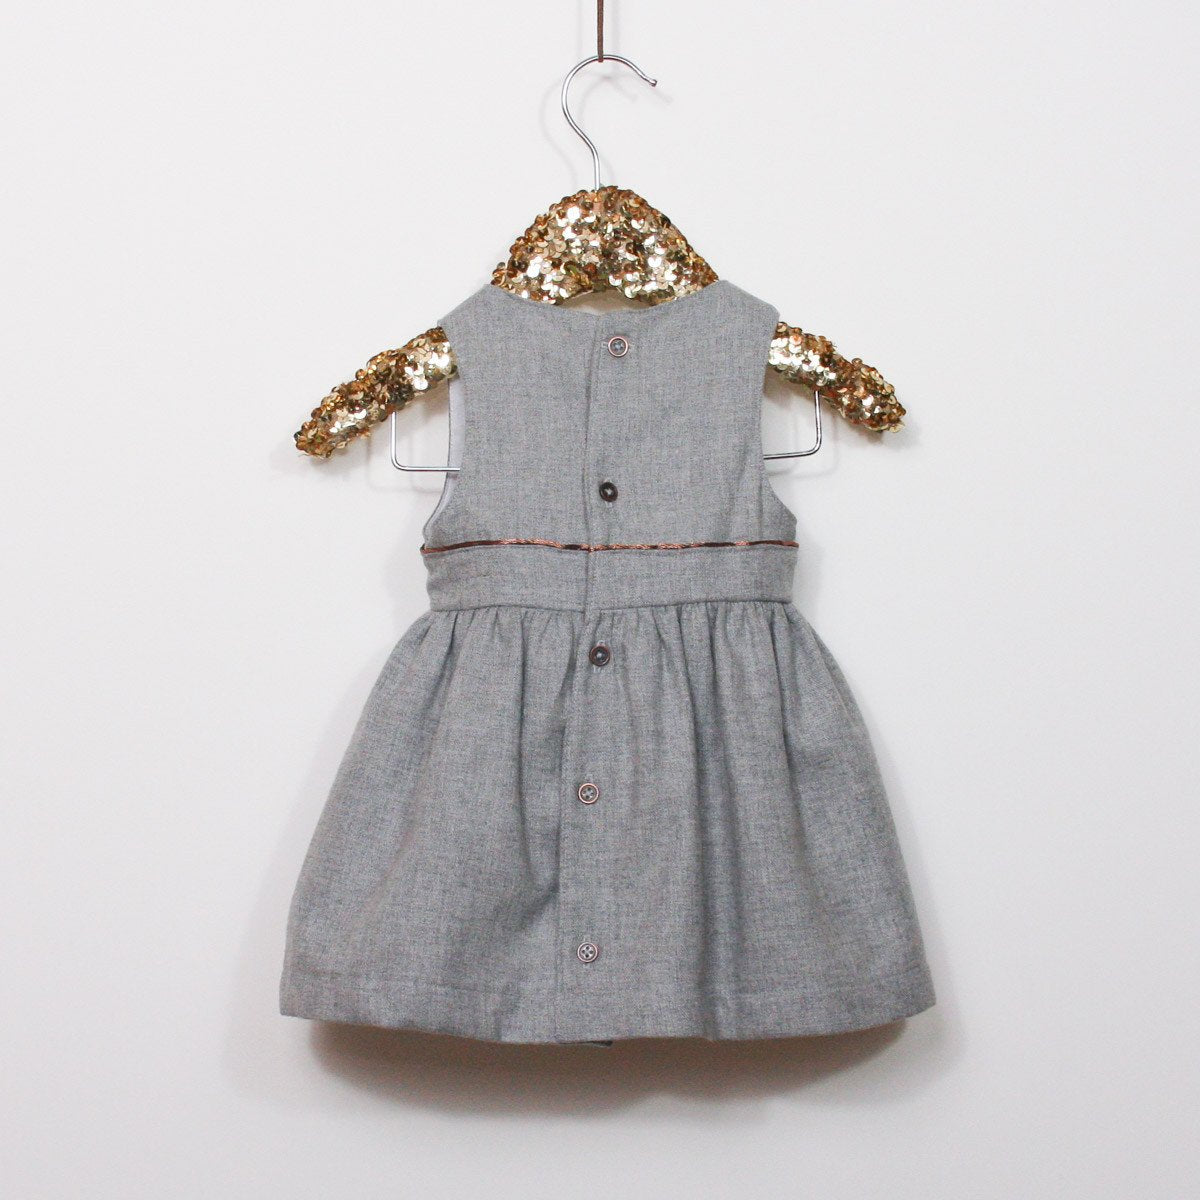 Ikatee - ROMA Dress - Babies 6-24M - Paper Sewing Pattern